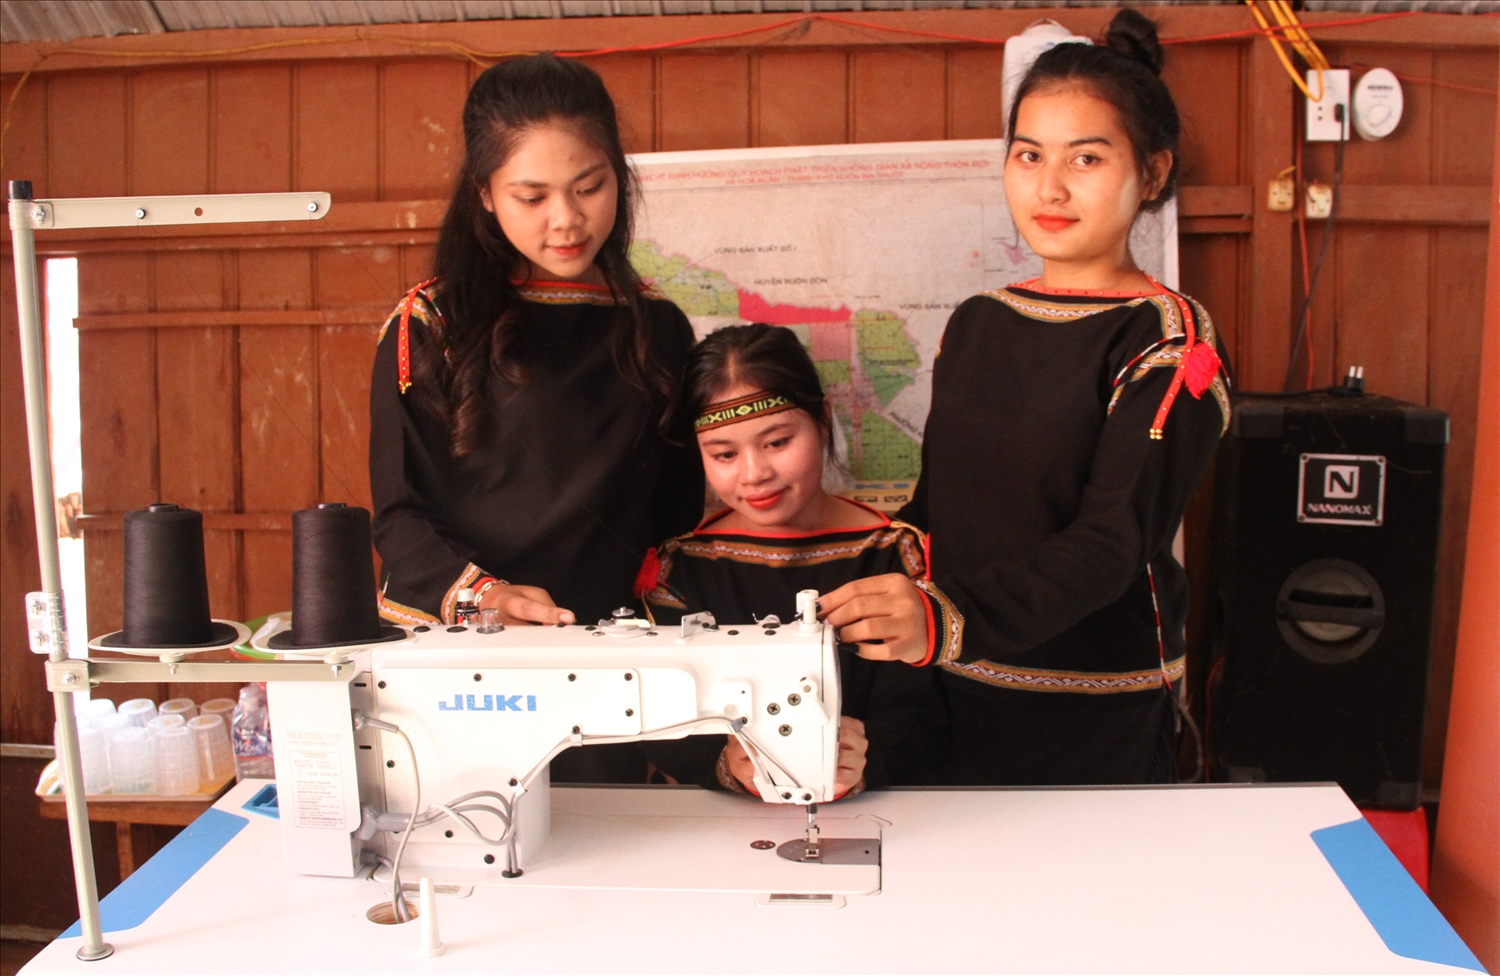 Câu lạc bộ Dệt thổ cẩm của người Ê Đê buôn Drai Hling được hỗ trợ máy móc, dụng cụ phục vụ việc truyền dạy và dệt thổ cẩm